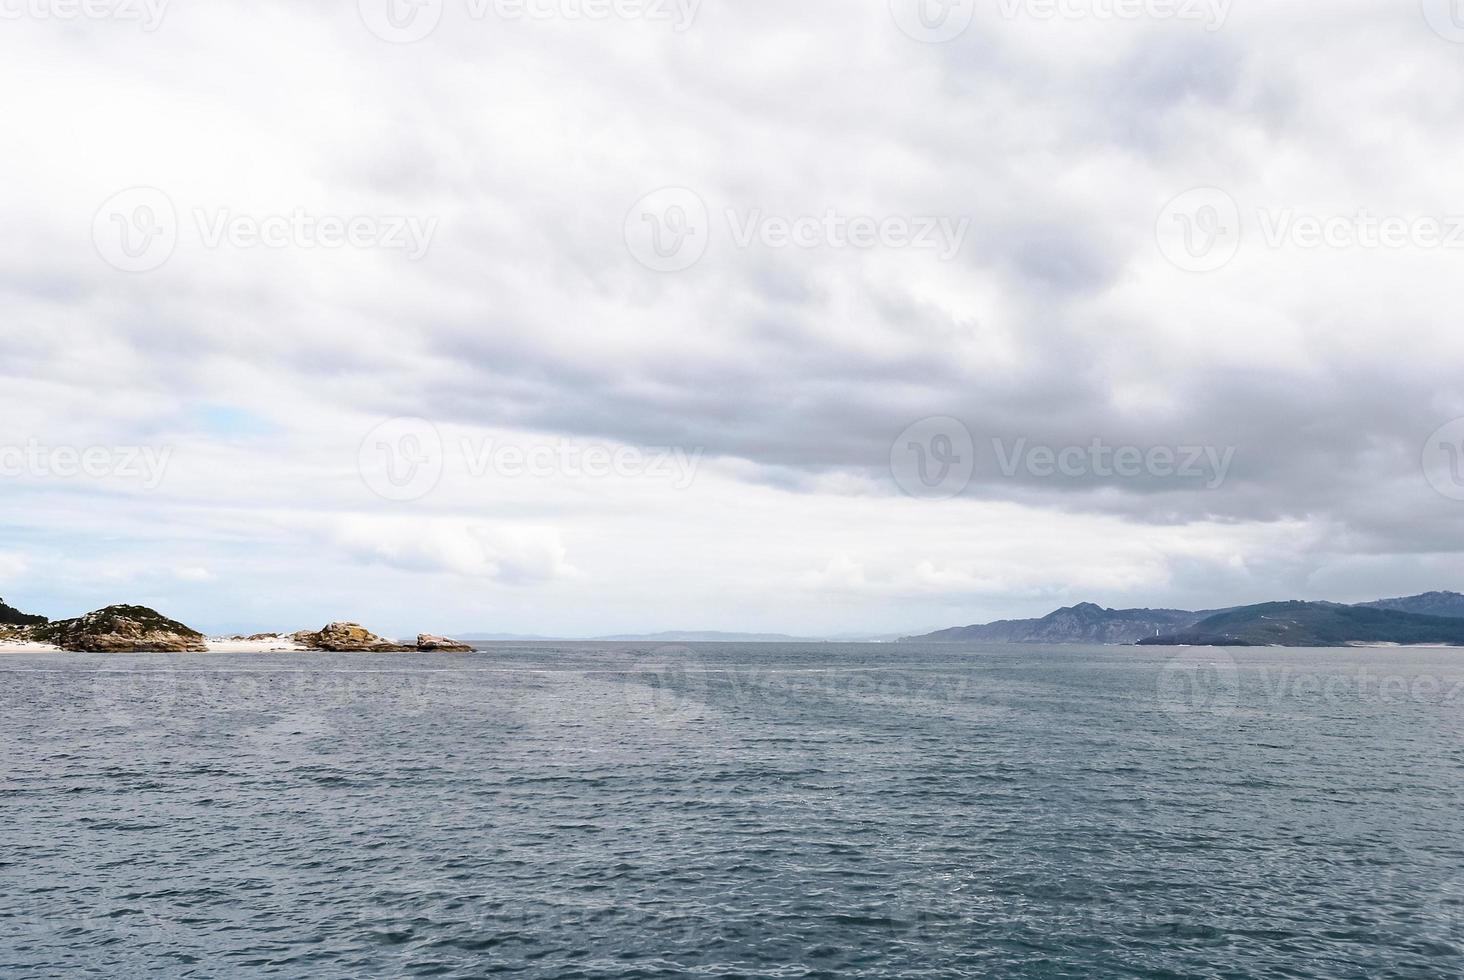 se av atlanten hav från cies öar, Spanien foto